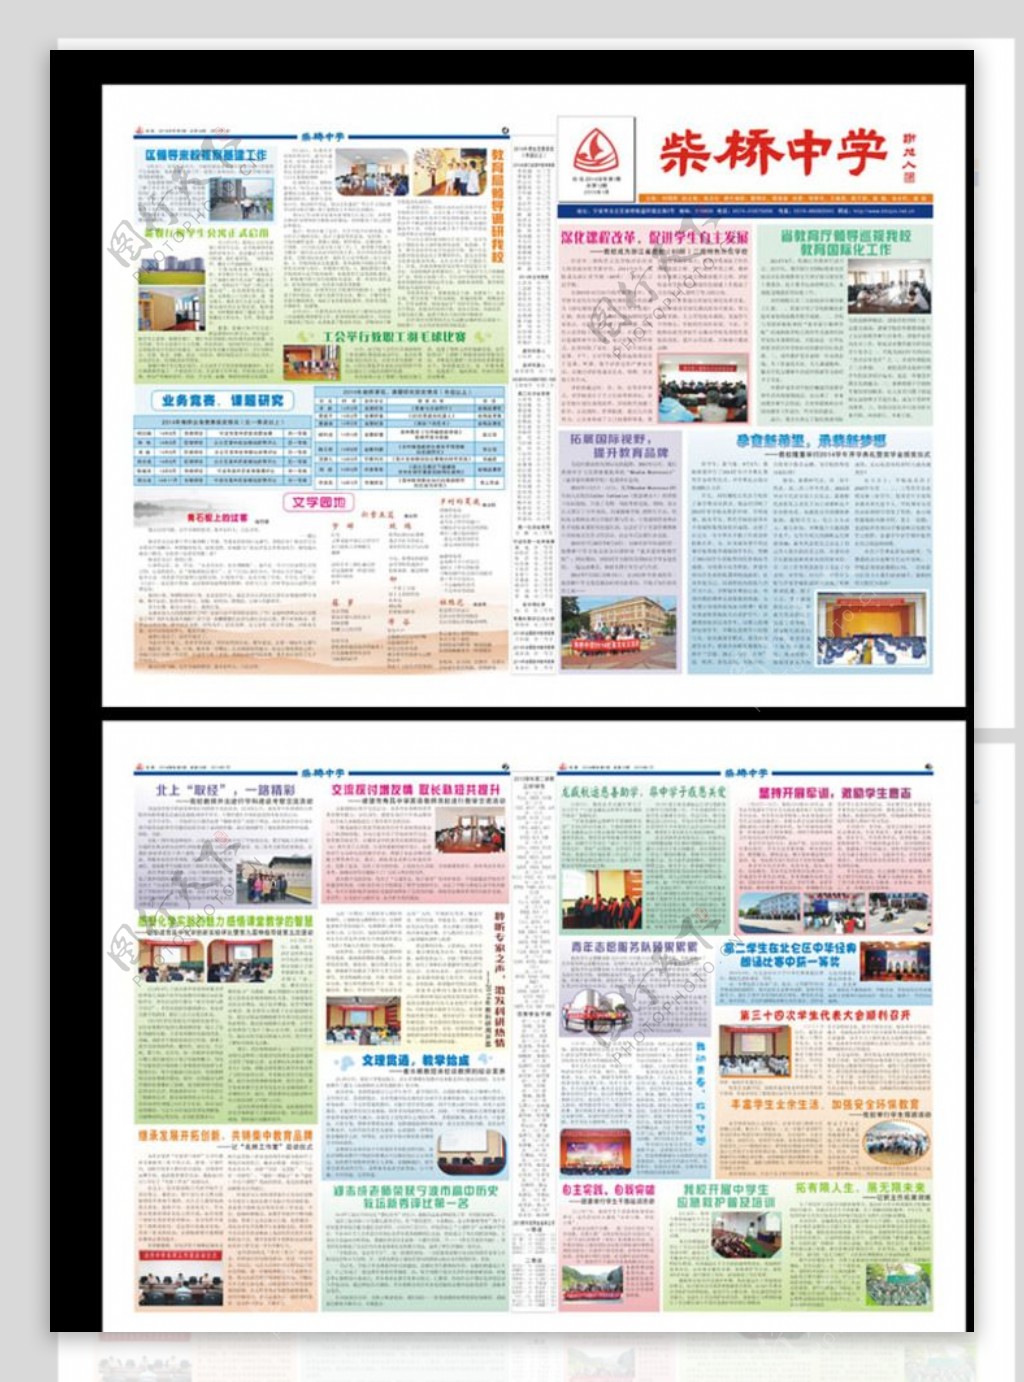 柴桥中学第12期报纸报纸图片